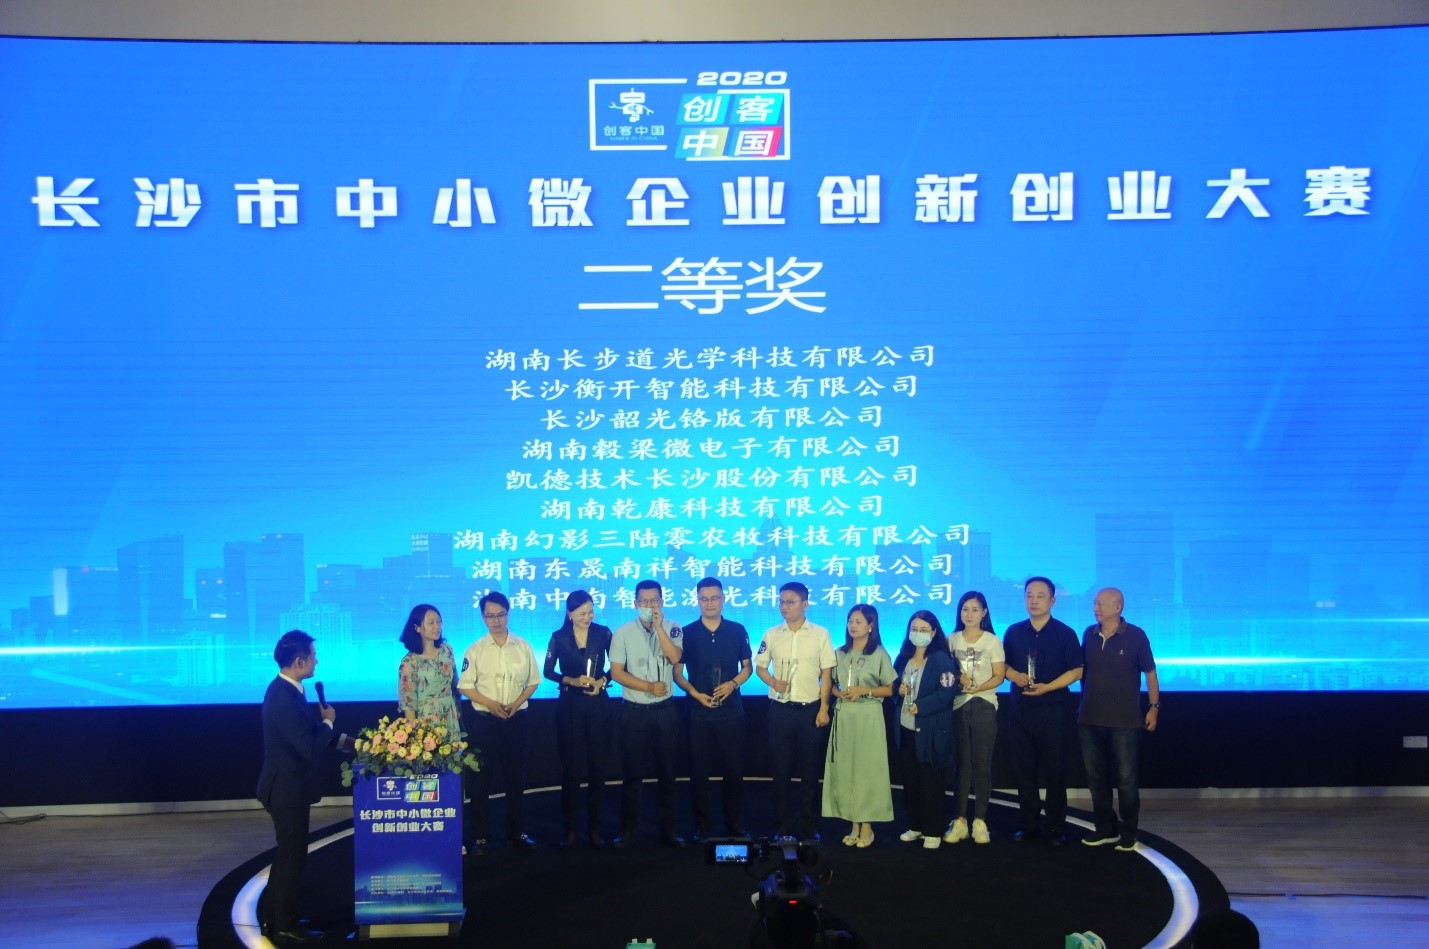 凯德技术长沙股份有限公司荣获2020年“创客中国”长沙市赛企业组二等奖